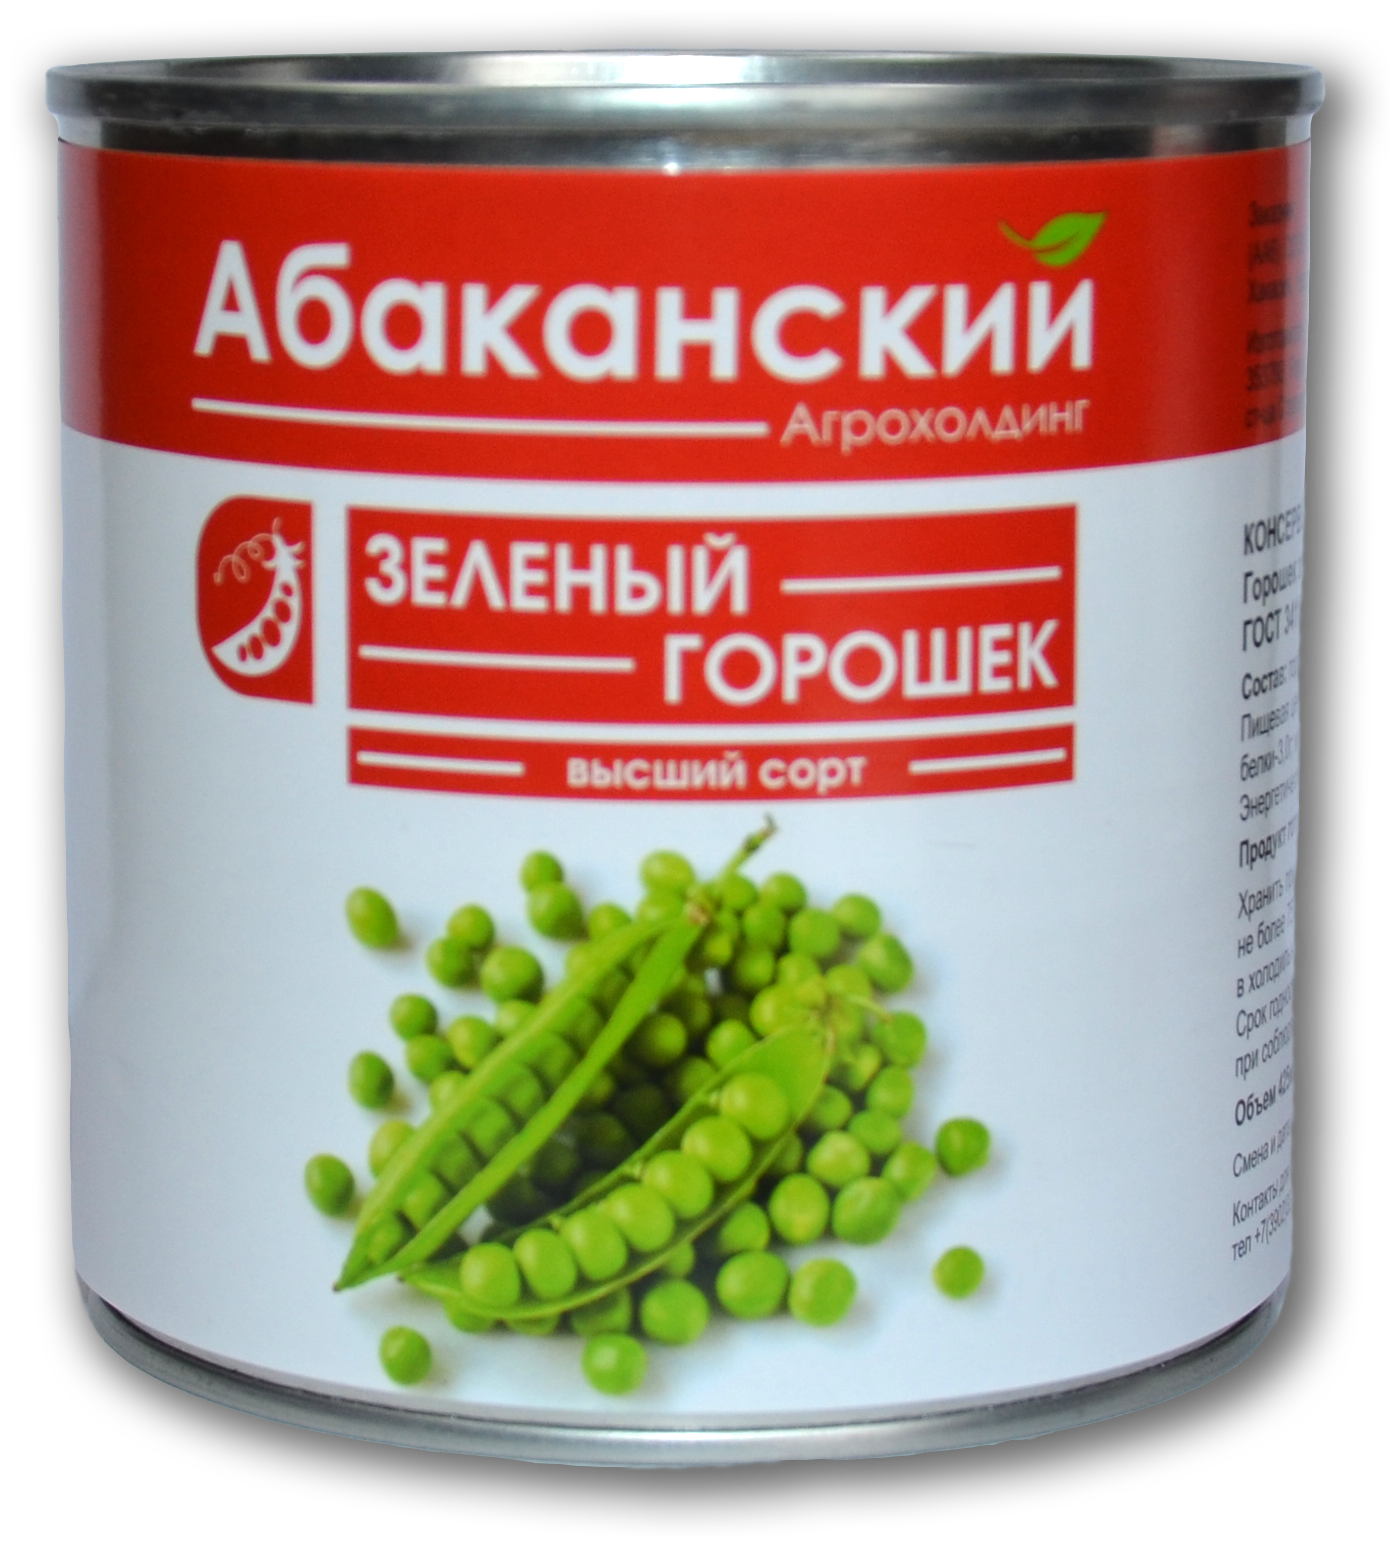 Горошек зеленый консервированный ГОСТ Агрохолдинг Абаканский, 400г в упаковке 6 штук - фотография № 3